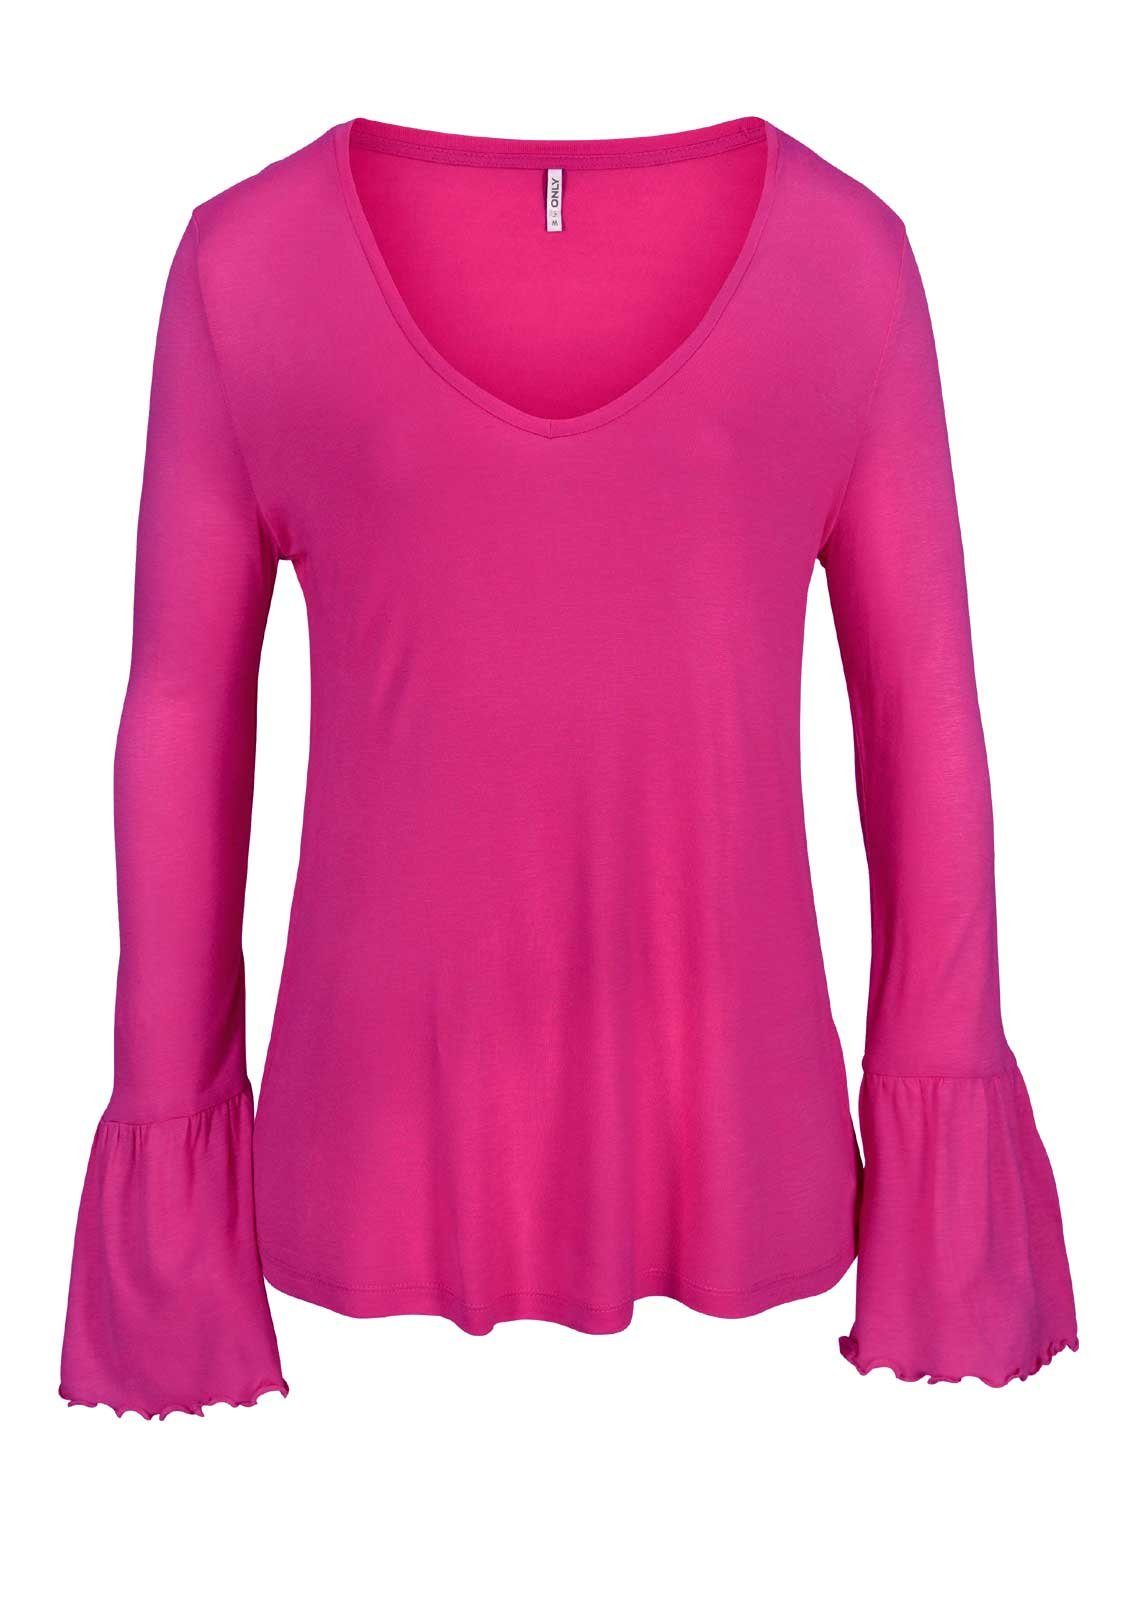 ONLY Longshirt Only Damen Marken-Shirt Volants, mit pink